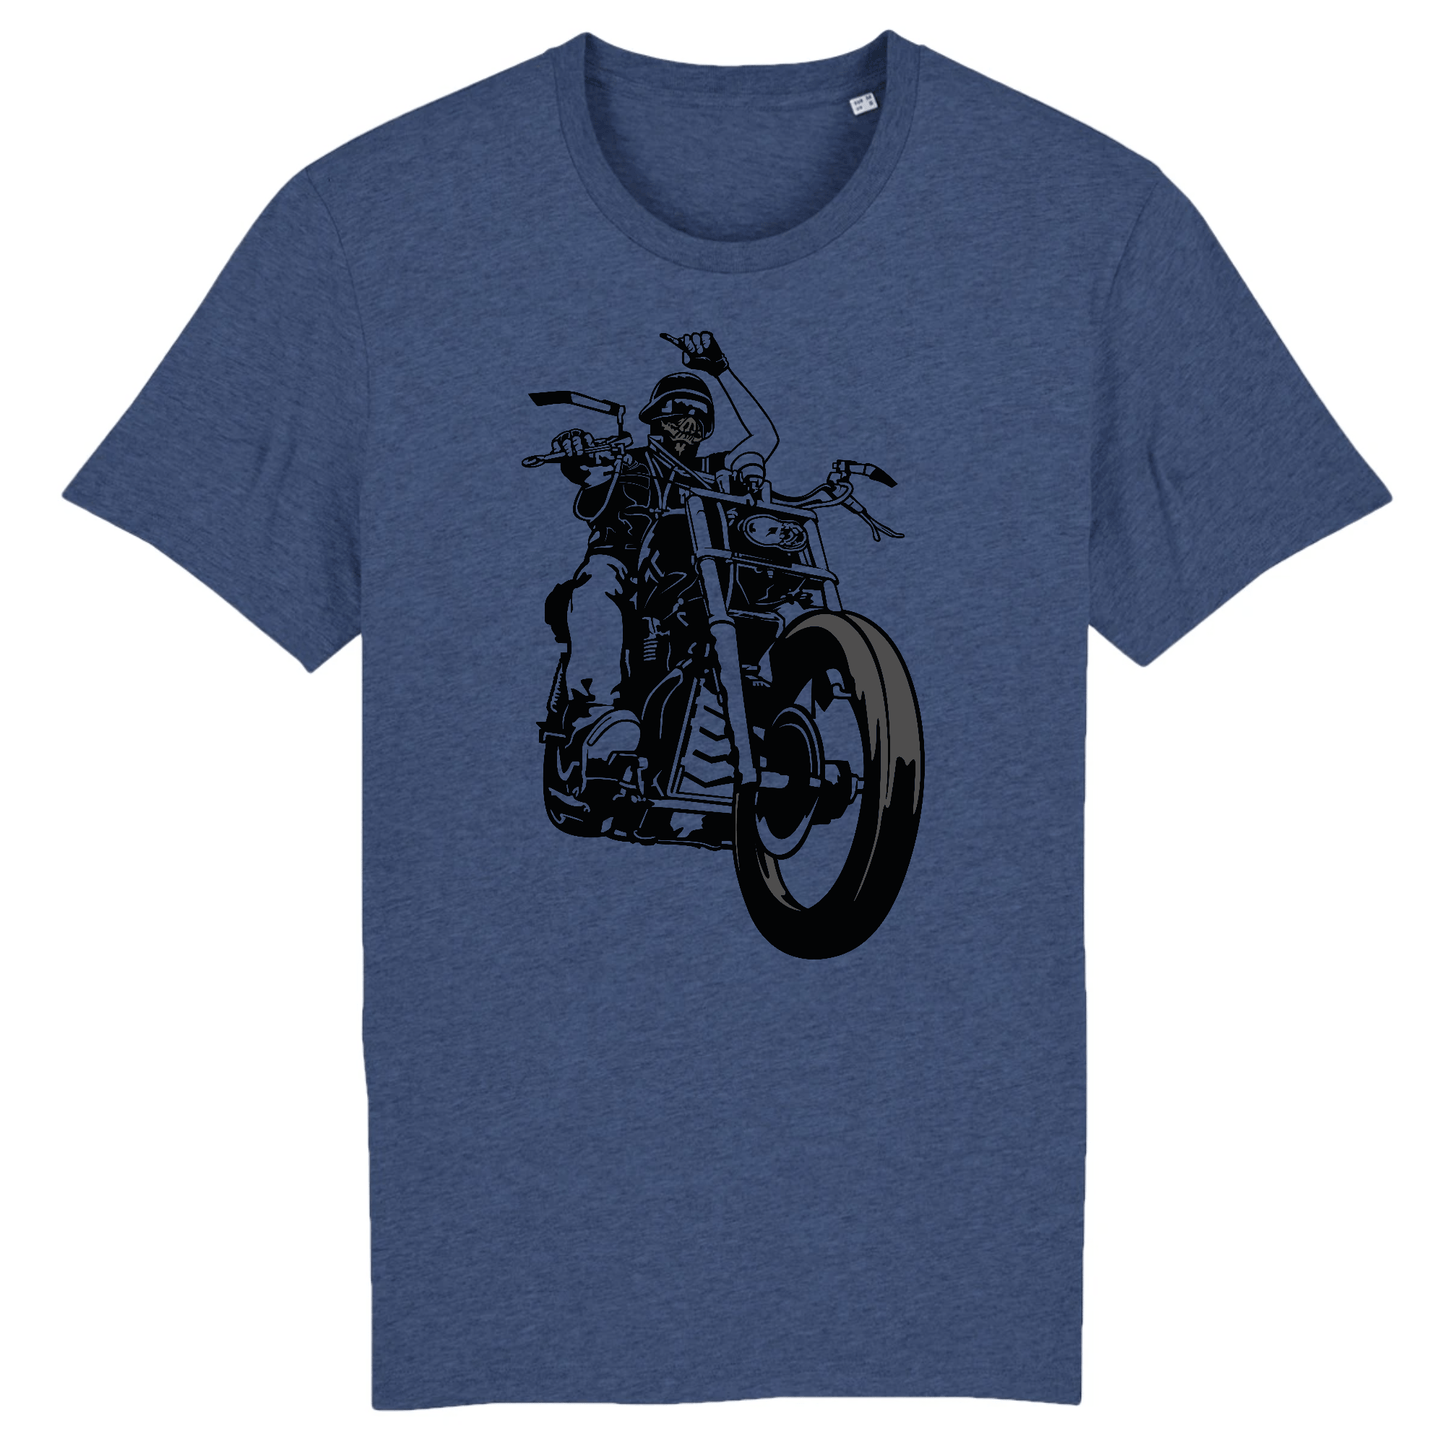 Tee shirt Moto Custom XS / Indigo